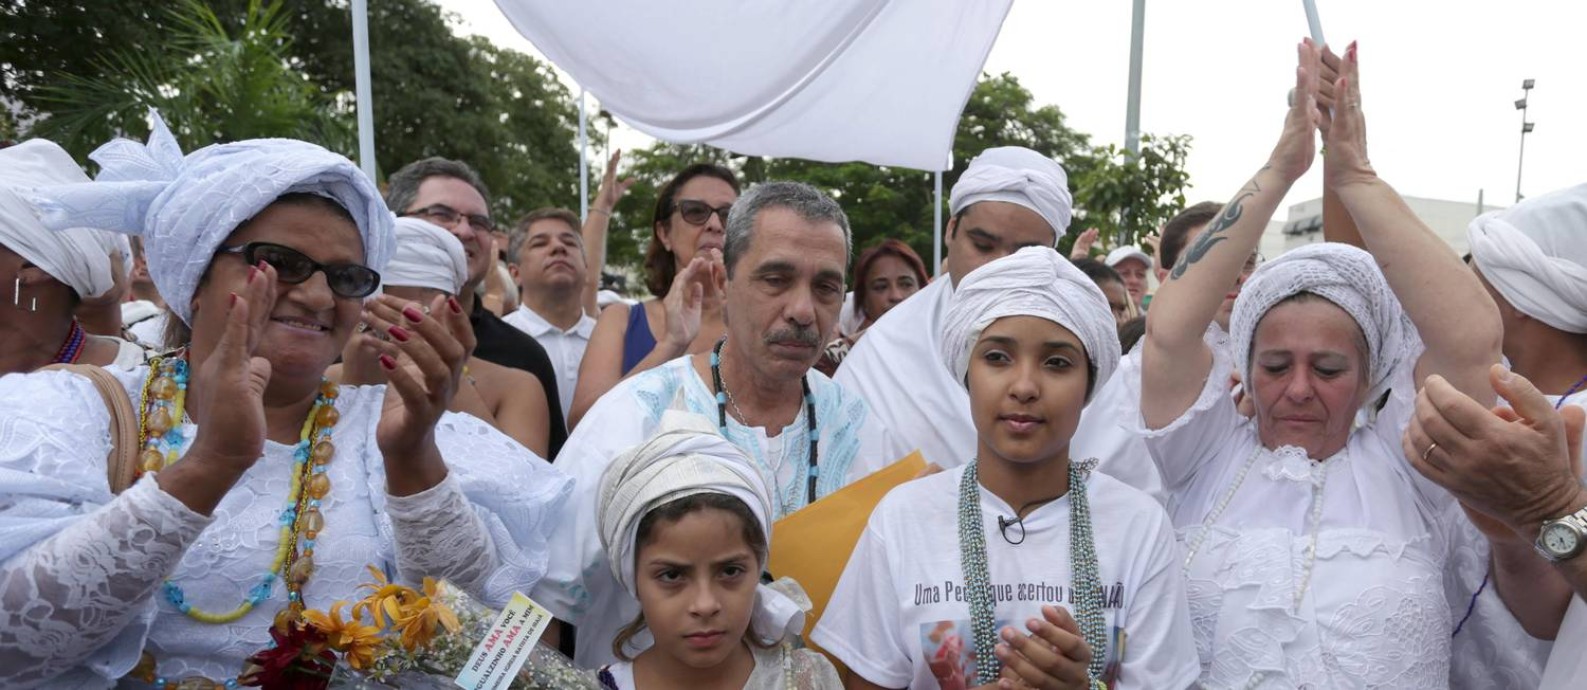 
Ato contra a intolerância religiosa em 2015, na Penha
Foto: Marcio Alves / O Globo (21/06/2015)